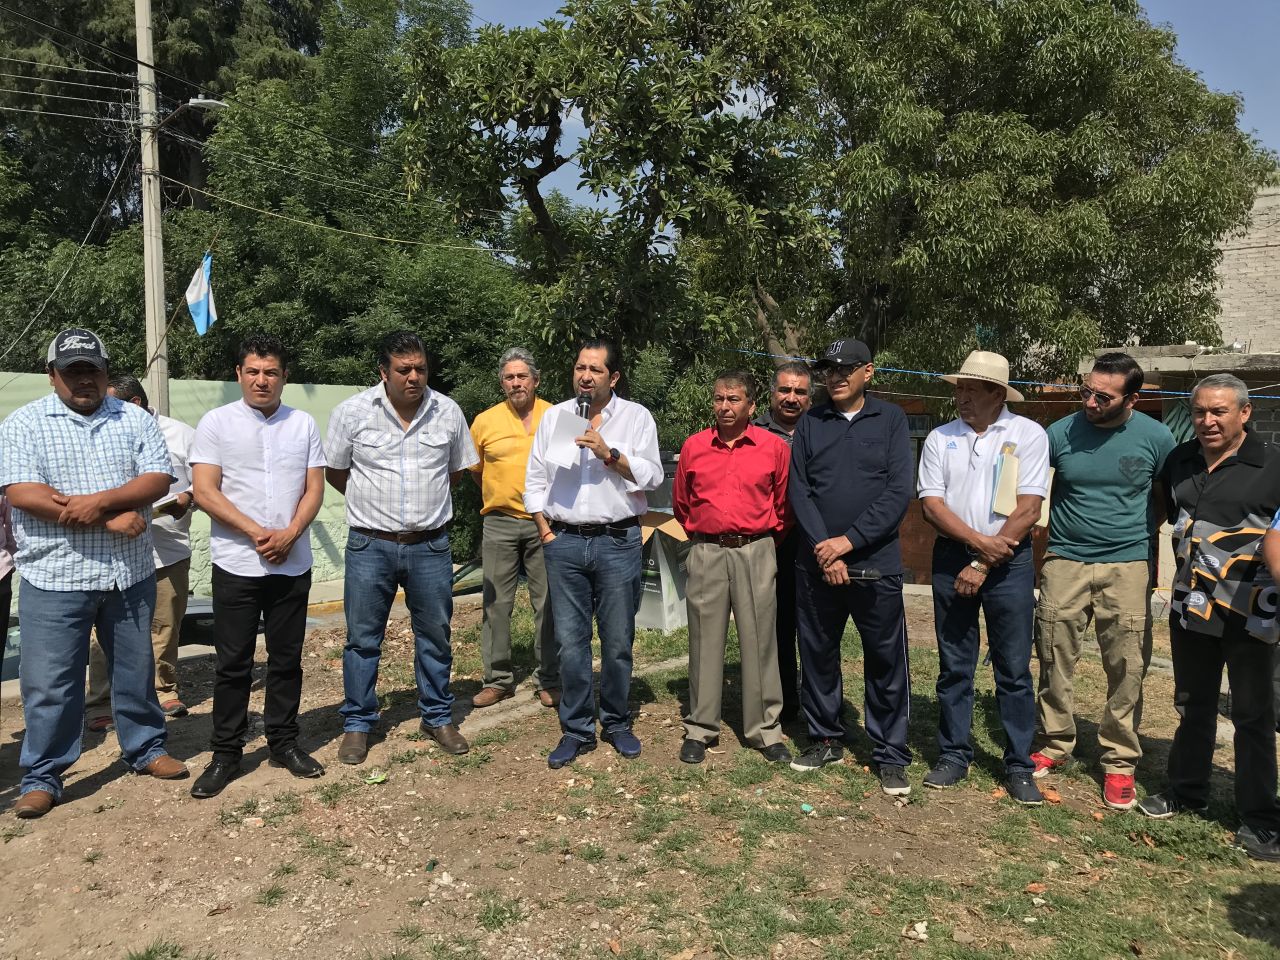 Francisco Vázquez coloca primera piedra para nueva delegación en La Purificación, Texcoco; habitantes impulsarán museo comunitario 